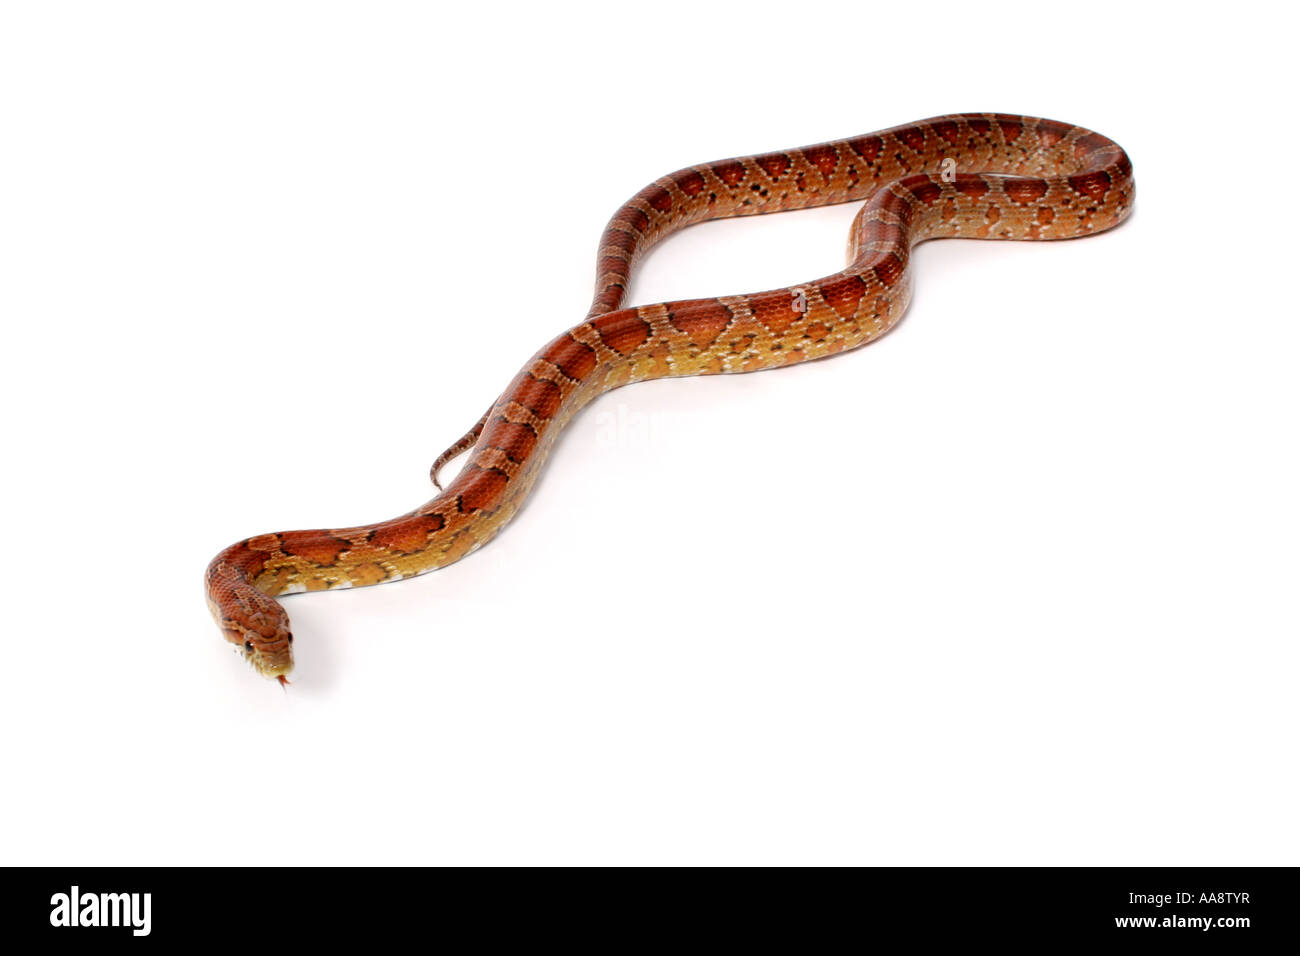 Un estudio de fotografía de una serpiente de maíz. Foto de stock